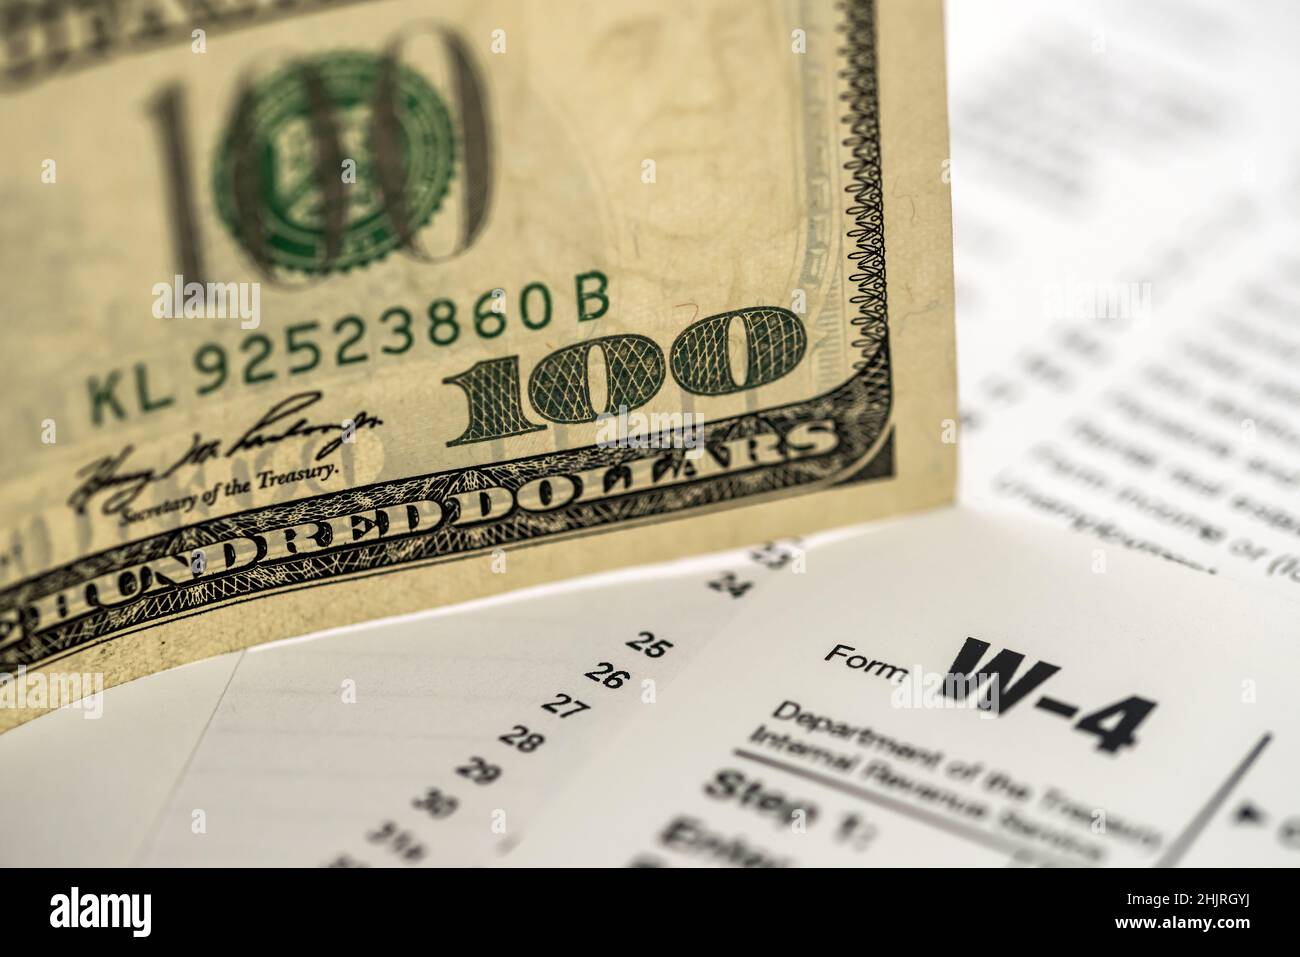 US tax form w4 w9 with money Stock Photo